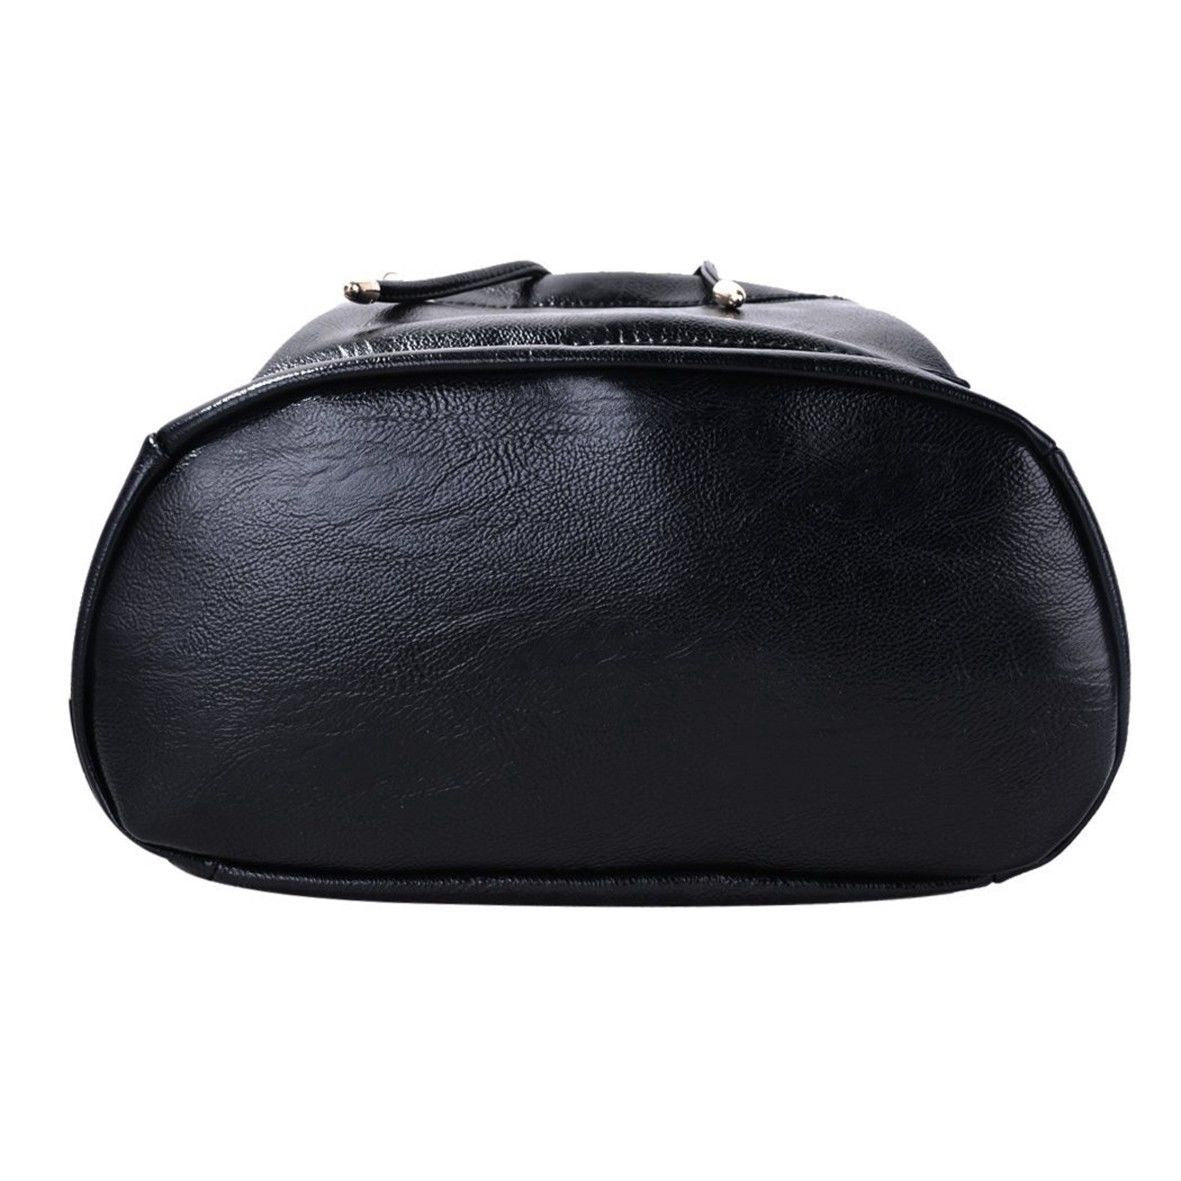 Hot sale Lady Women Leather Backpack School Rucksack College Shoulder Satchel Travel Bag - ebowsos